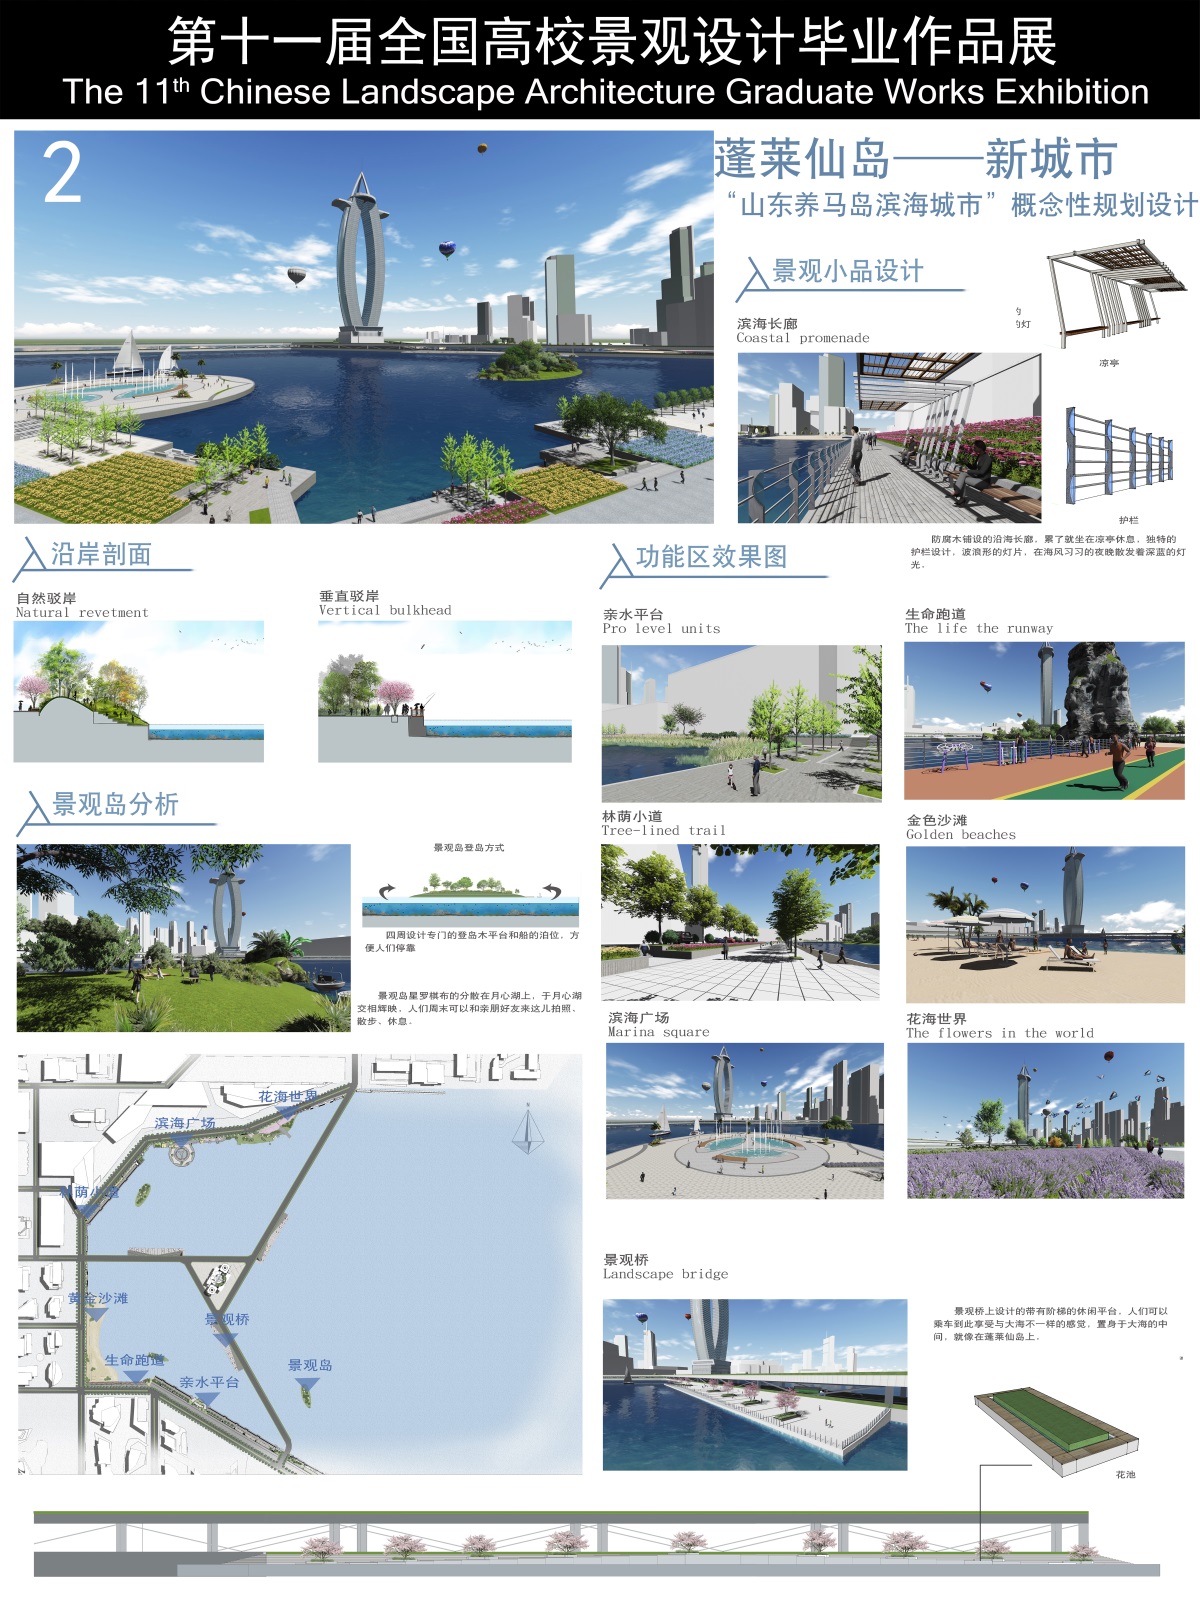 蓬莱仙岛——新城市 山东养马岛滨海城市概念性规划设计-1